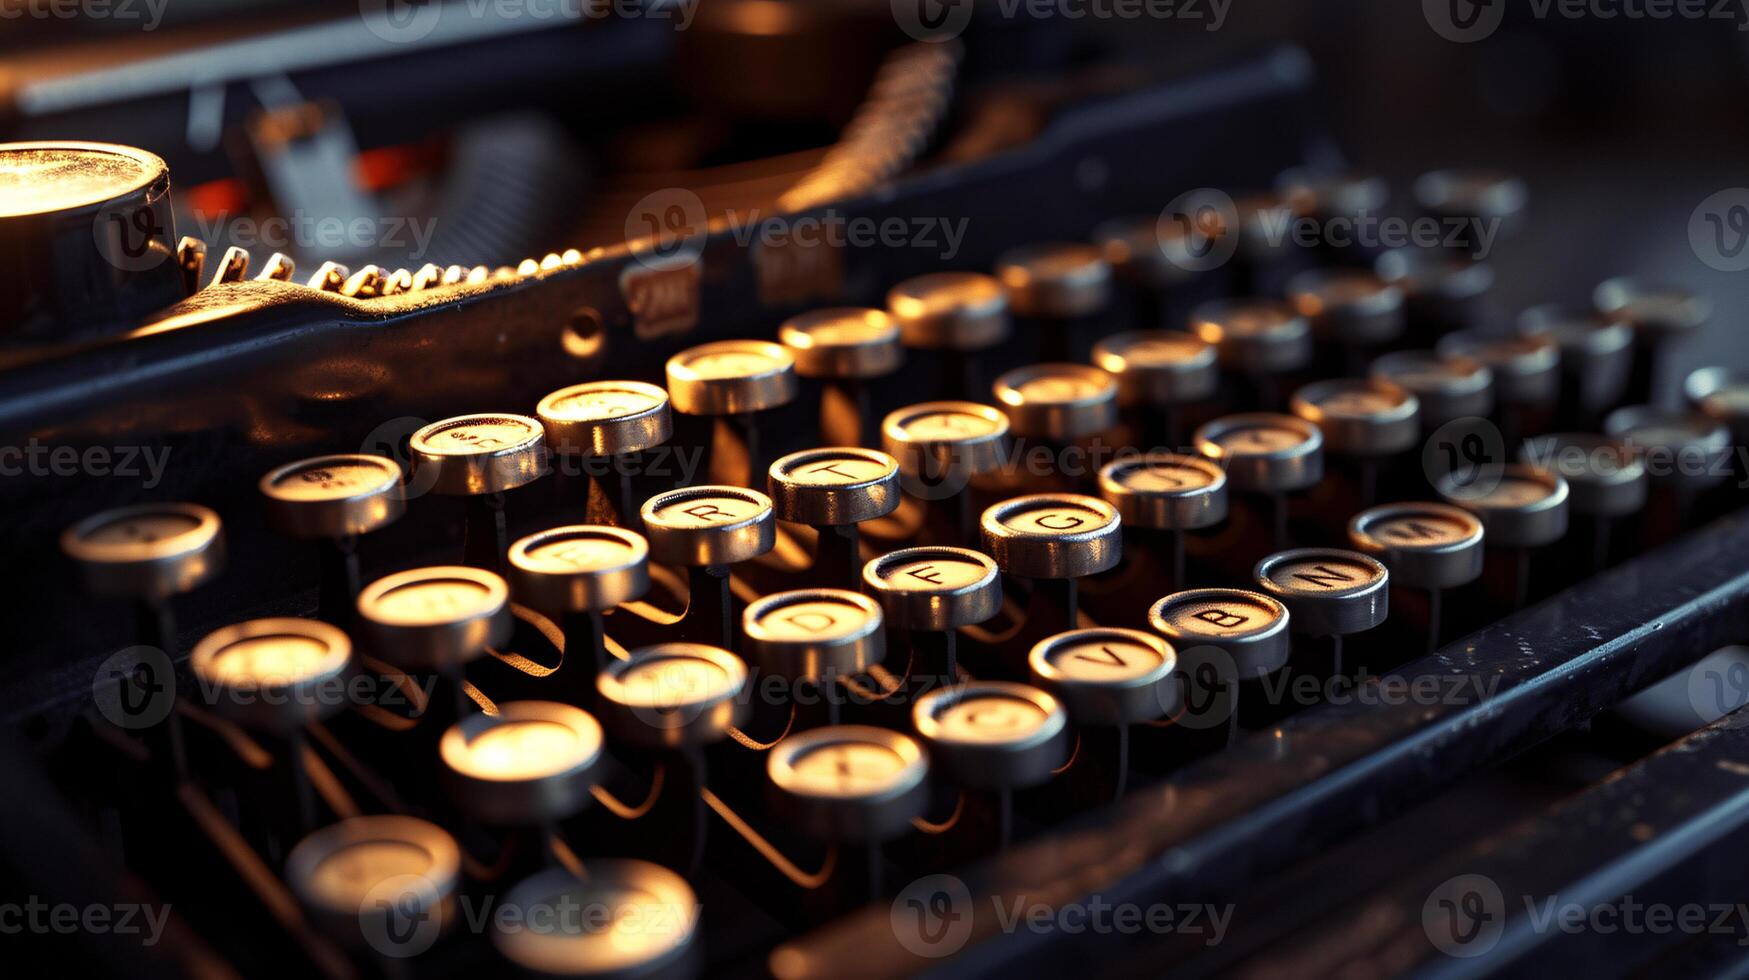 un Clásico máquina de escribir, bañado en suave, direccional ligero foto